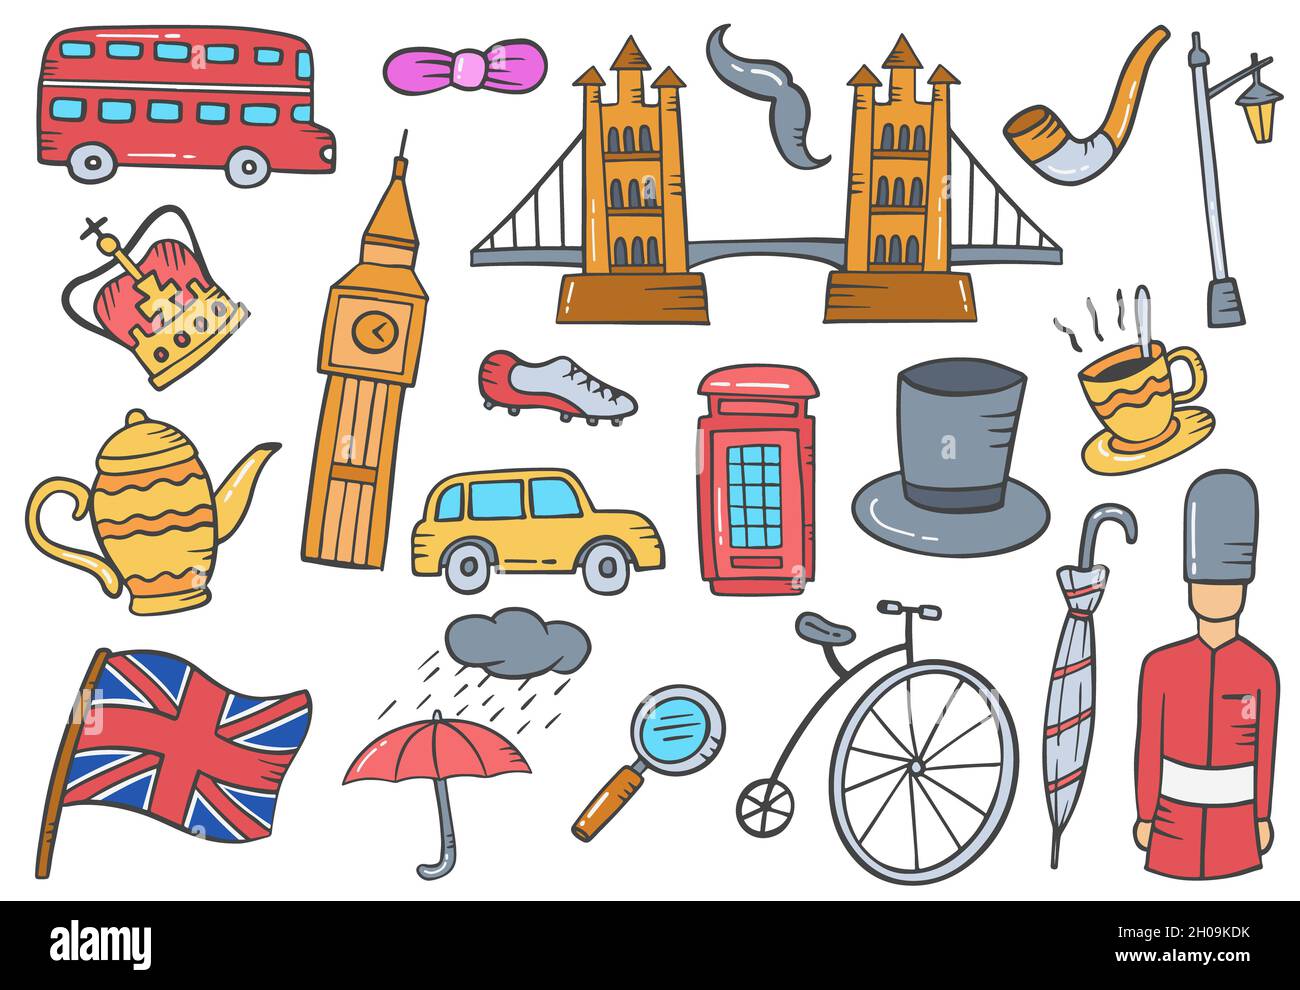 collection d'ensembles de doodle dessinées à la main, angleterre ou pays britannique, avec illustration vectorielle de style plat Banque D'Images